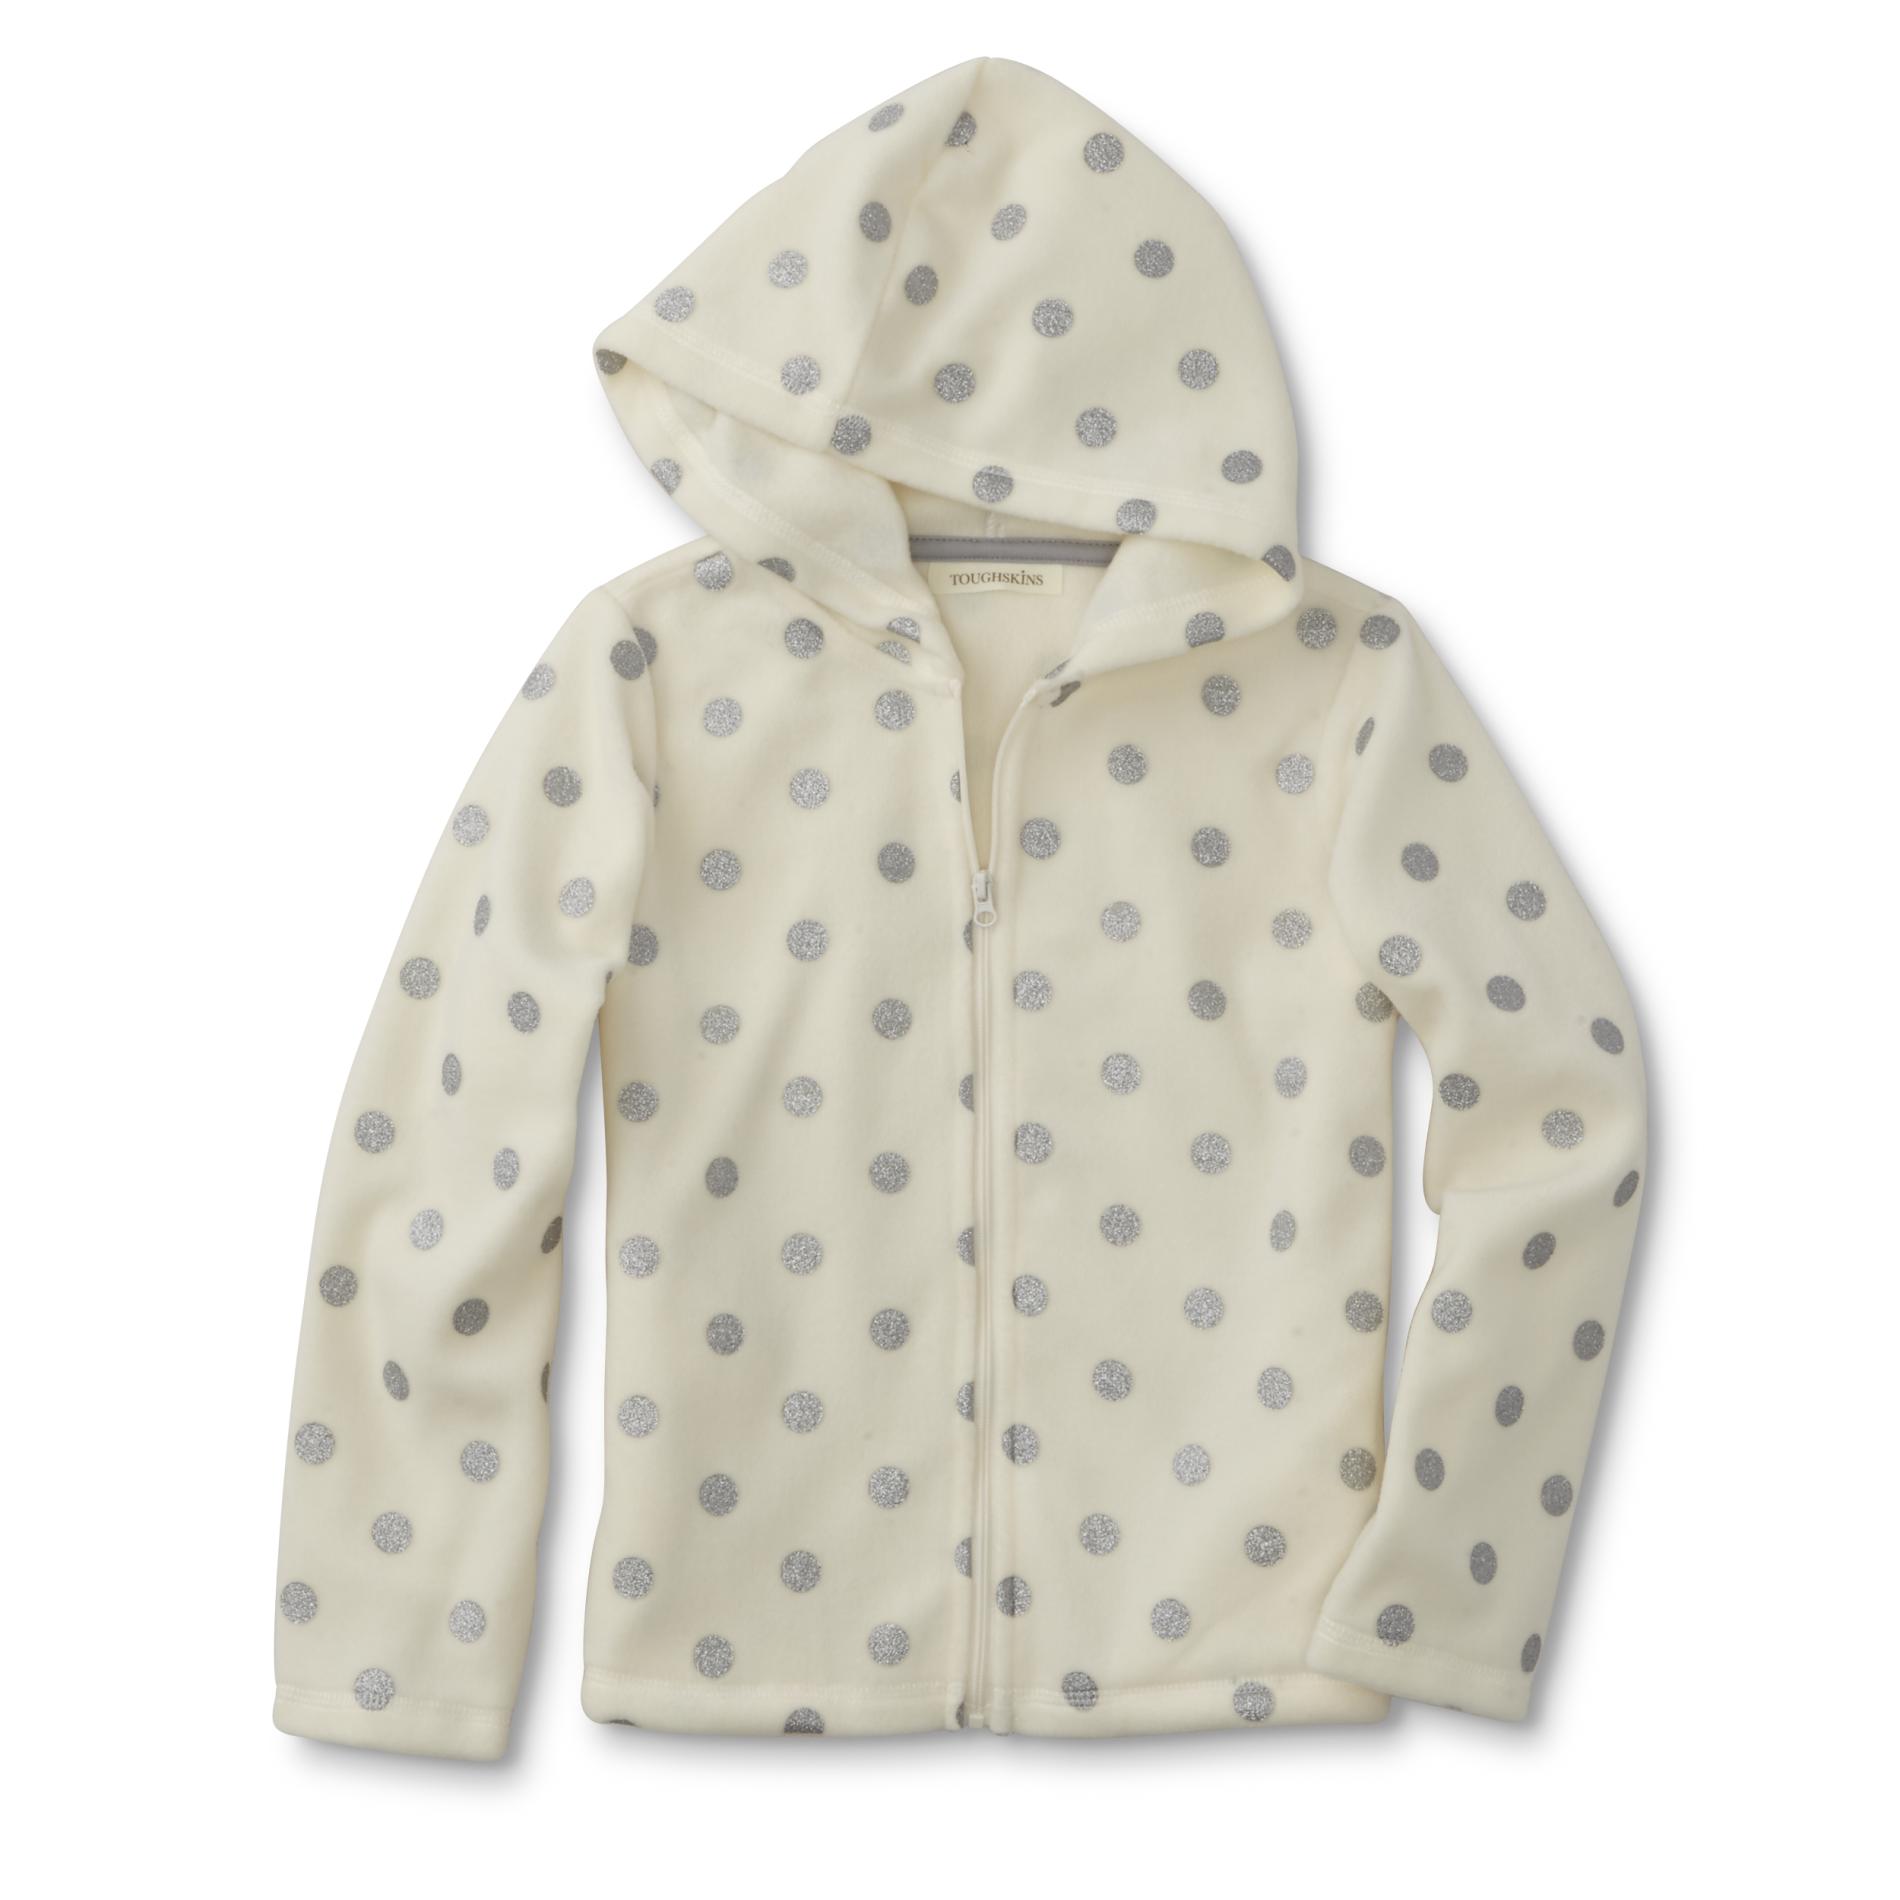 Toughskins Girls' Fleece Hoodie Jacket - Glitter Dots